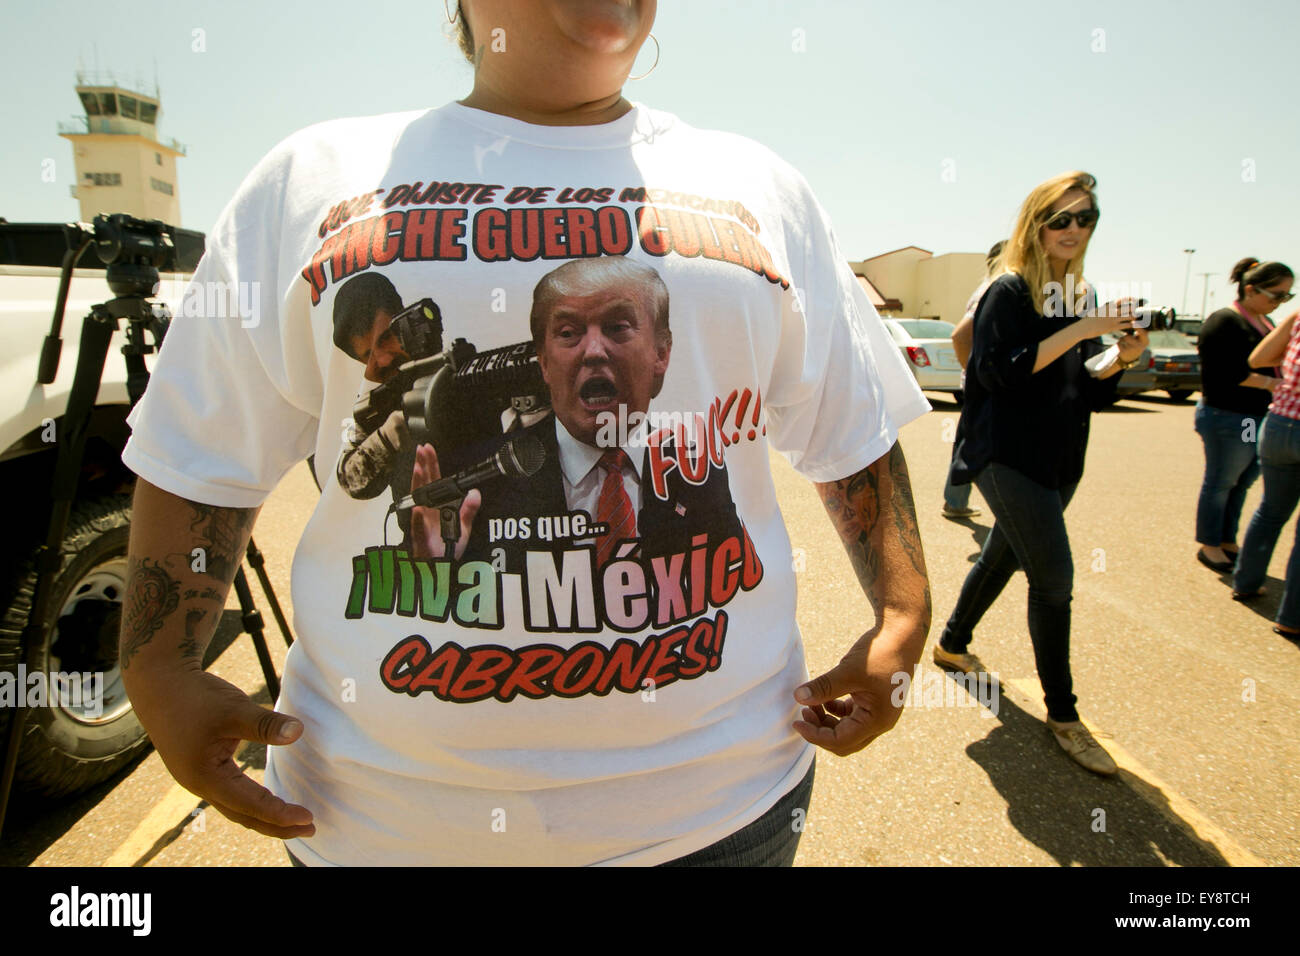 Laredo, Texas, USA. 22 juillet, 2015. Pricilla Villarreal, porte un t-shirt avec qui comprend les insultes de M. Trump et les images d'un trafiquant de drogue mexicain El Chapo Guzman avant l'arrivée attendue du candidat présidentiel américain Donald Trump le 23 juillet 2015 Banque D'Images